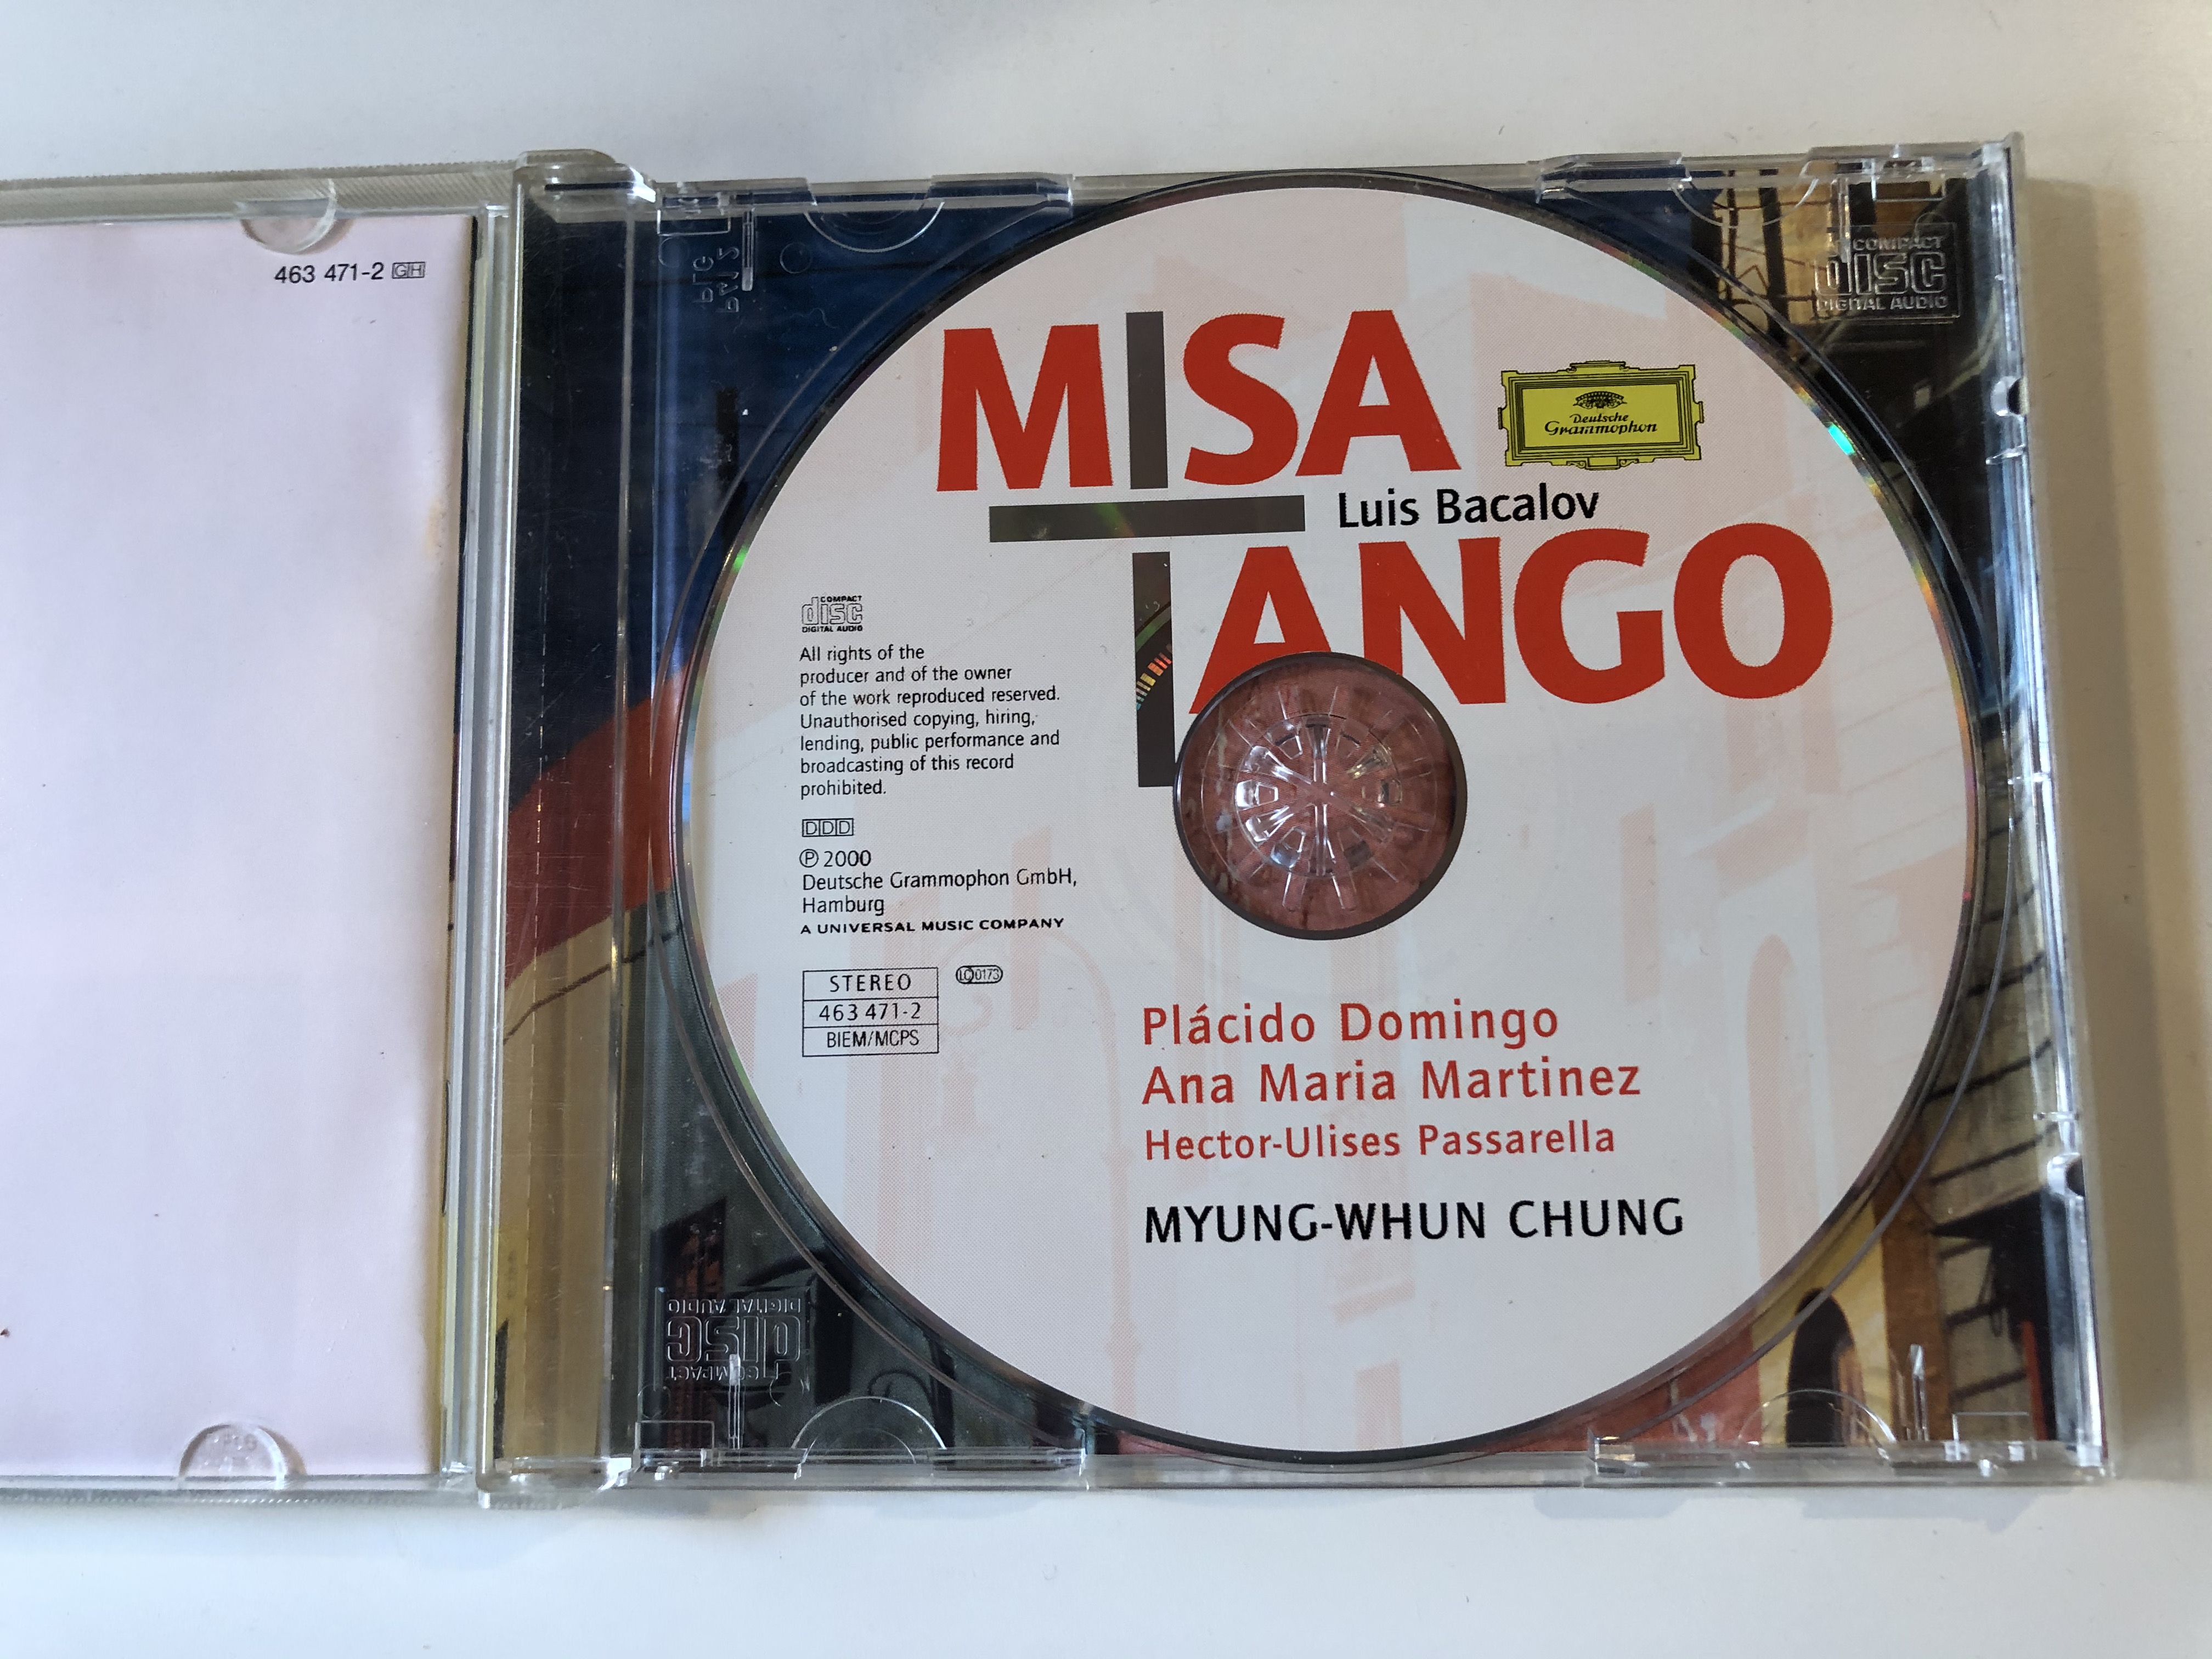 misa-tango-luis-bacalov-placido-domingo-ana-maria-martinez-myung-whun-chung-coro-dell-accademia-nazionale-di-santa-cecilia-deutsche-grammophon-audio-cd-2000-stereo-463-471-2-2-.jpg